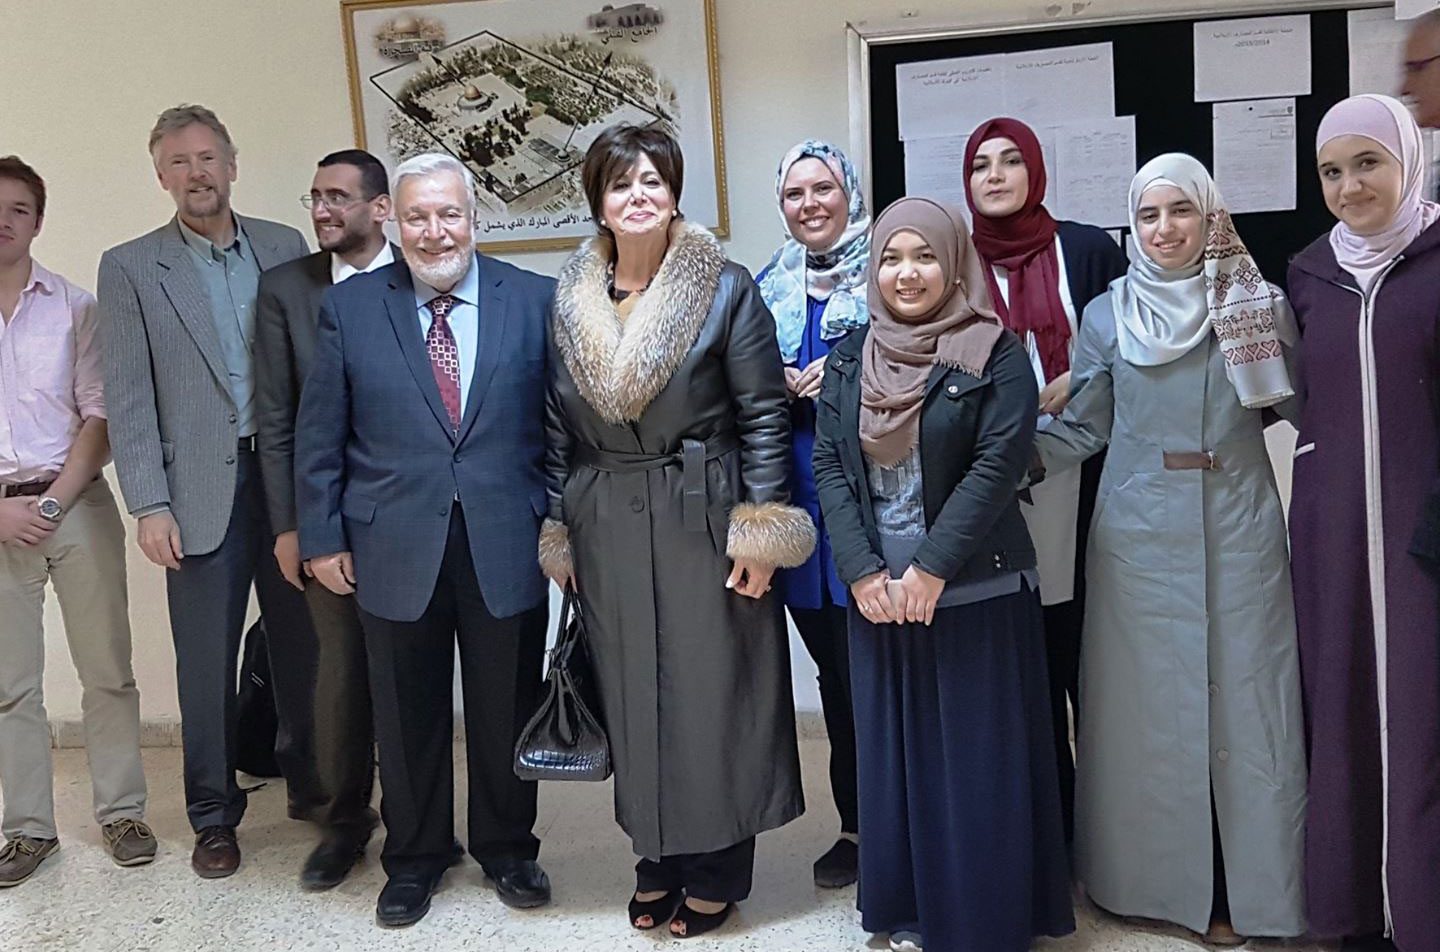 Discussion in University of Jordan, Institute of Islamic studies